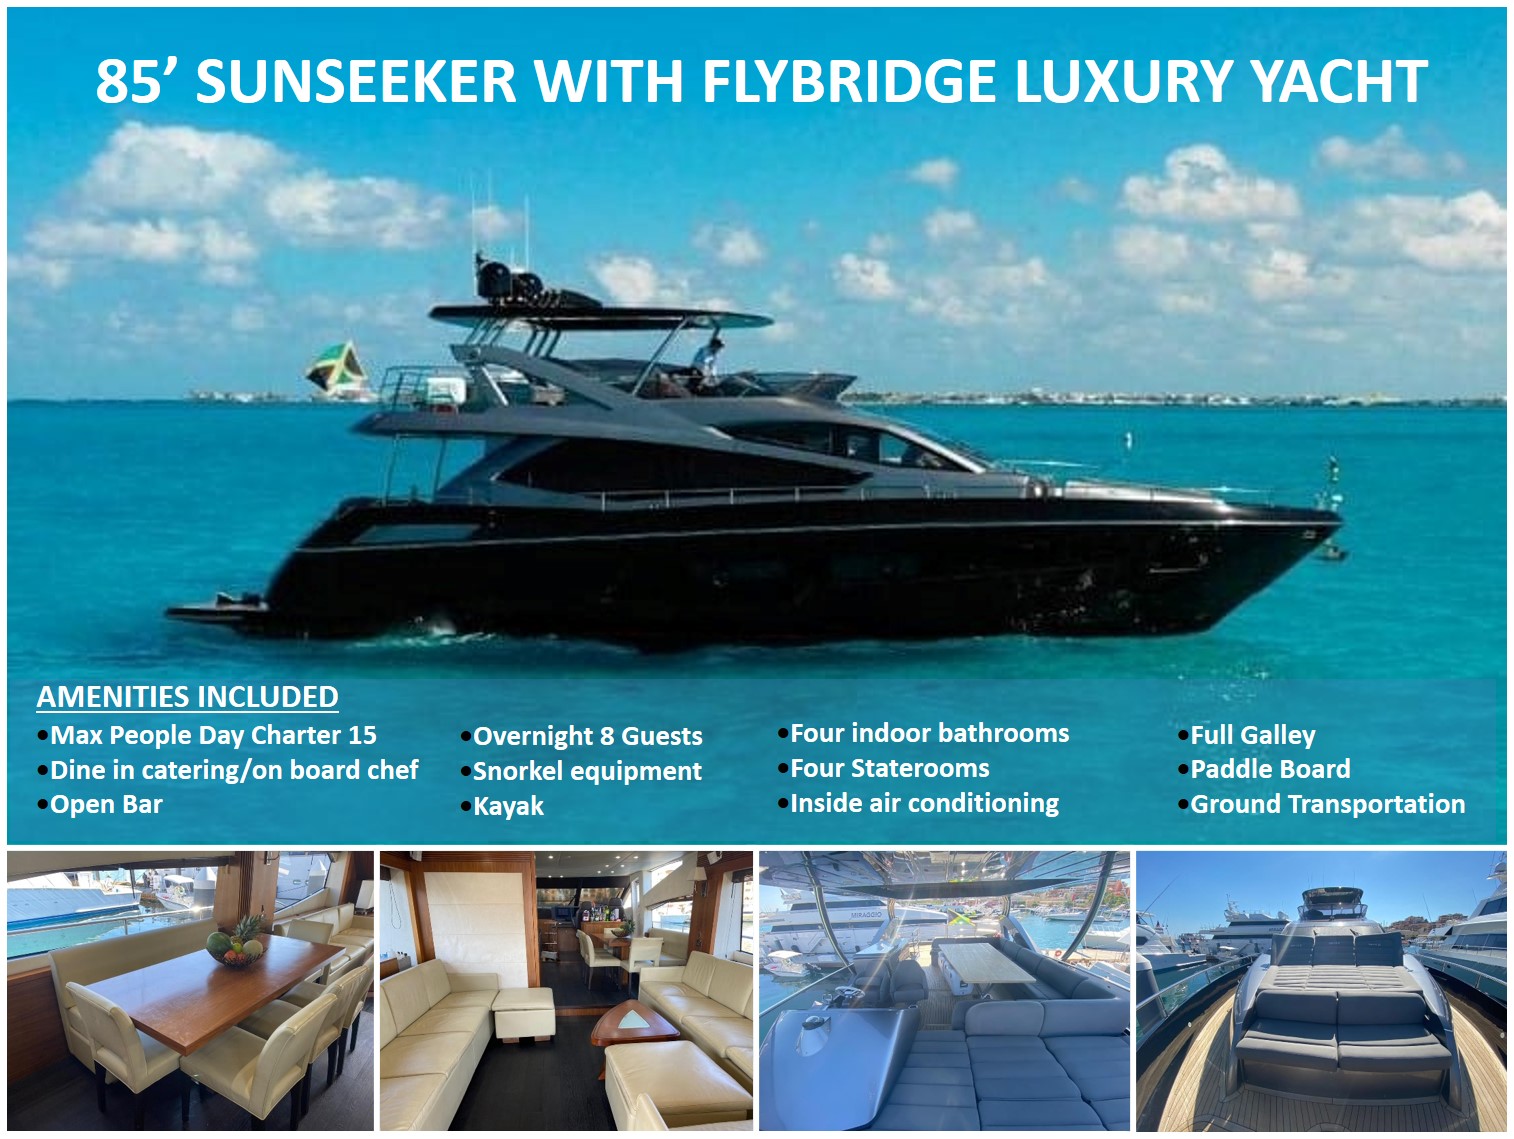 85-sunseeker-manhattan-luxury-yacht